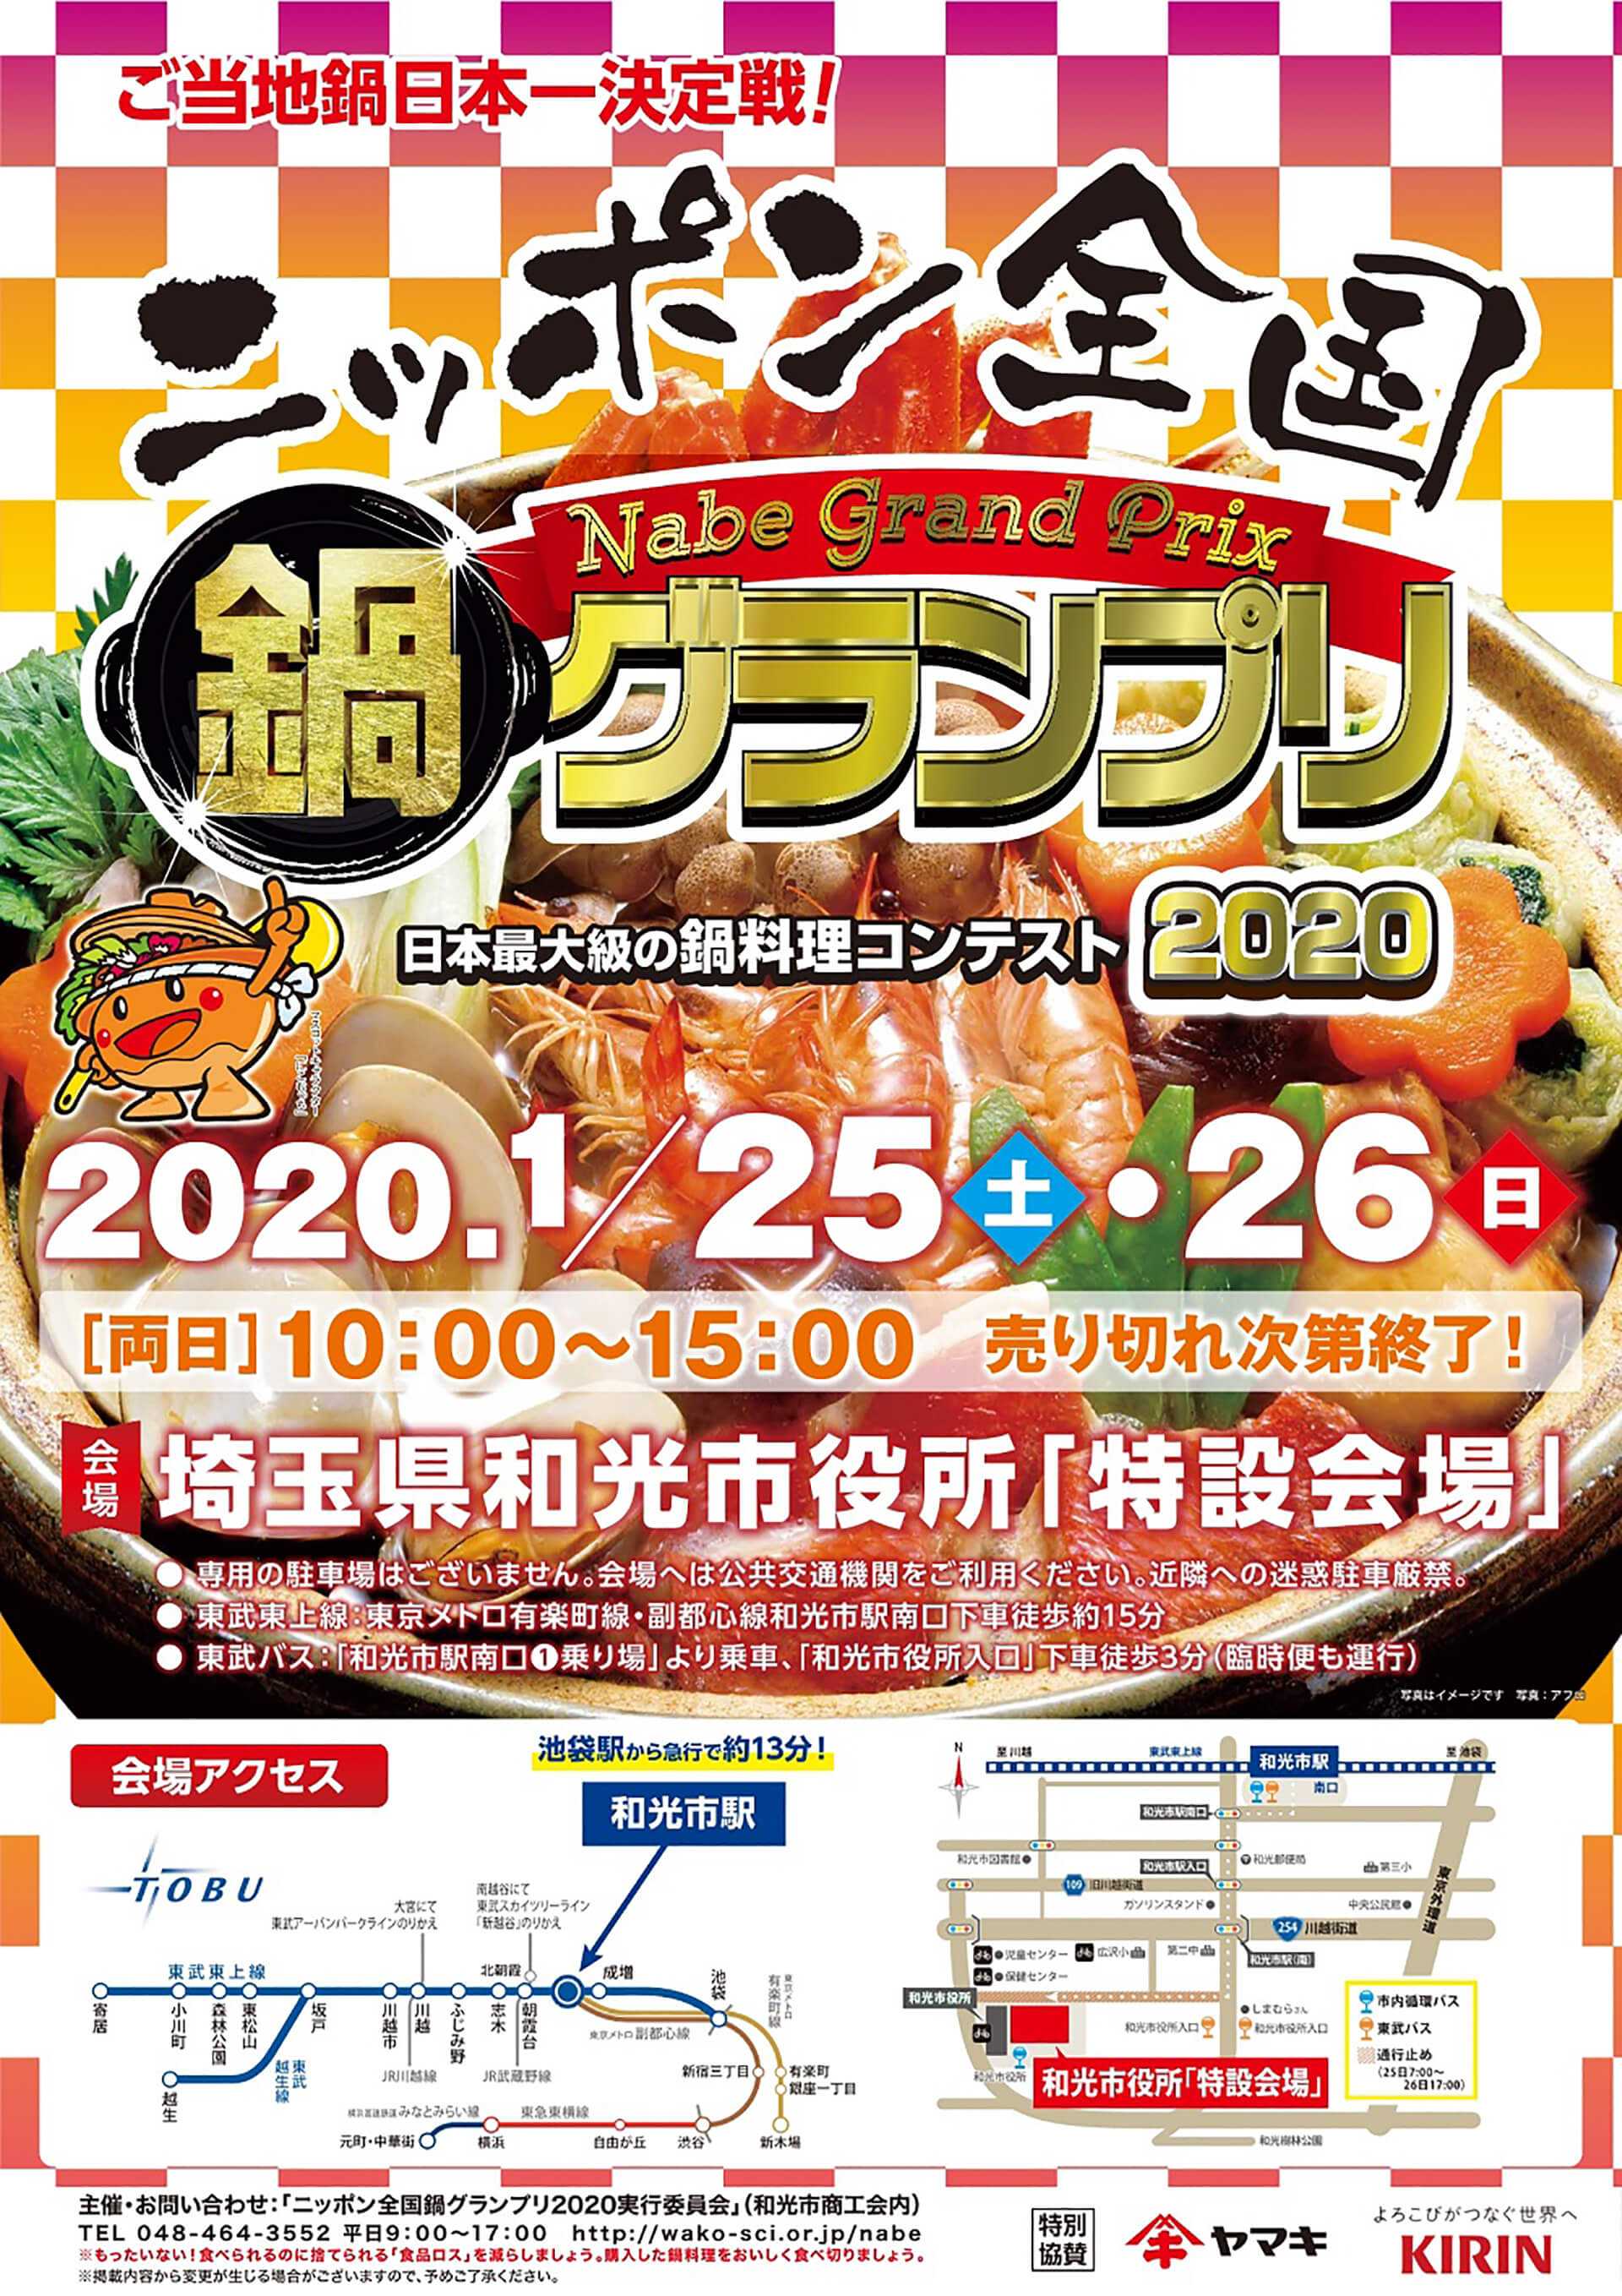 ニッポン全国鍋グランプリ2020ポスター